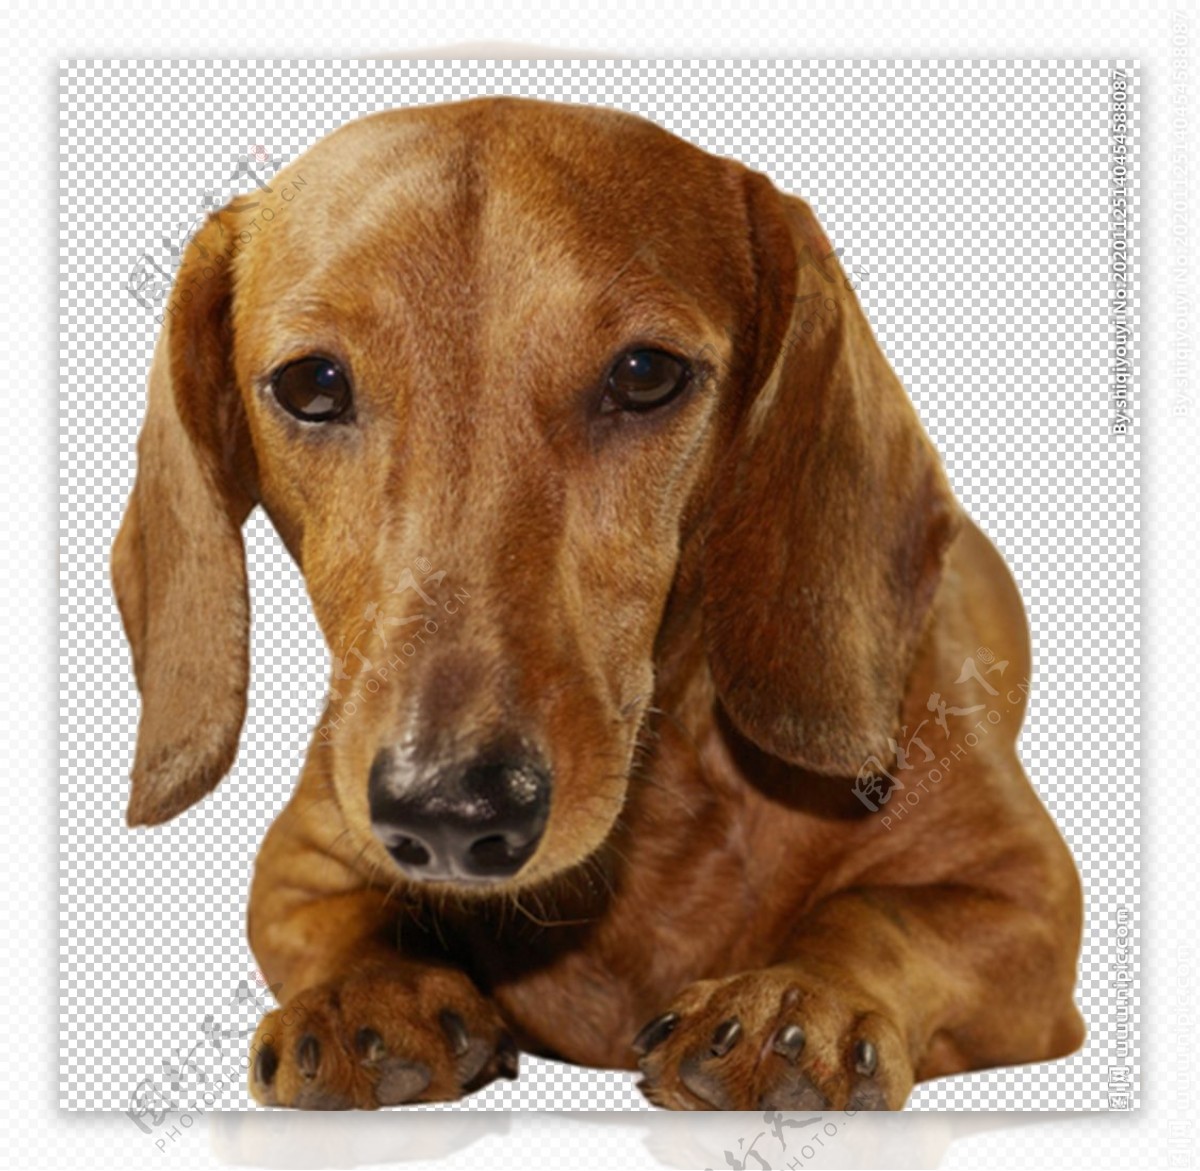 壁纸1024×768德国腊肠犬图片 宠物明星狗狗图片壁纸,宠物狗狗图鉴-迷你腊肠犬壁纸(第二集)壁纸图片-动物壁纸-动物图片素材-桌面壁纸